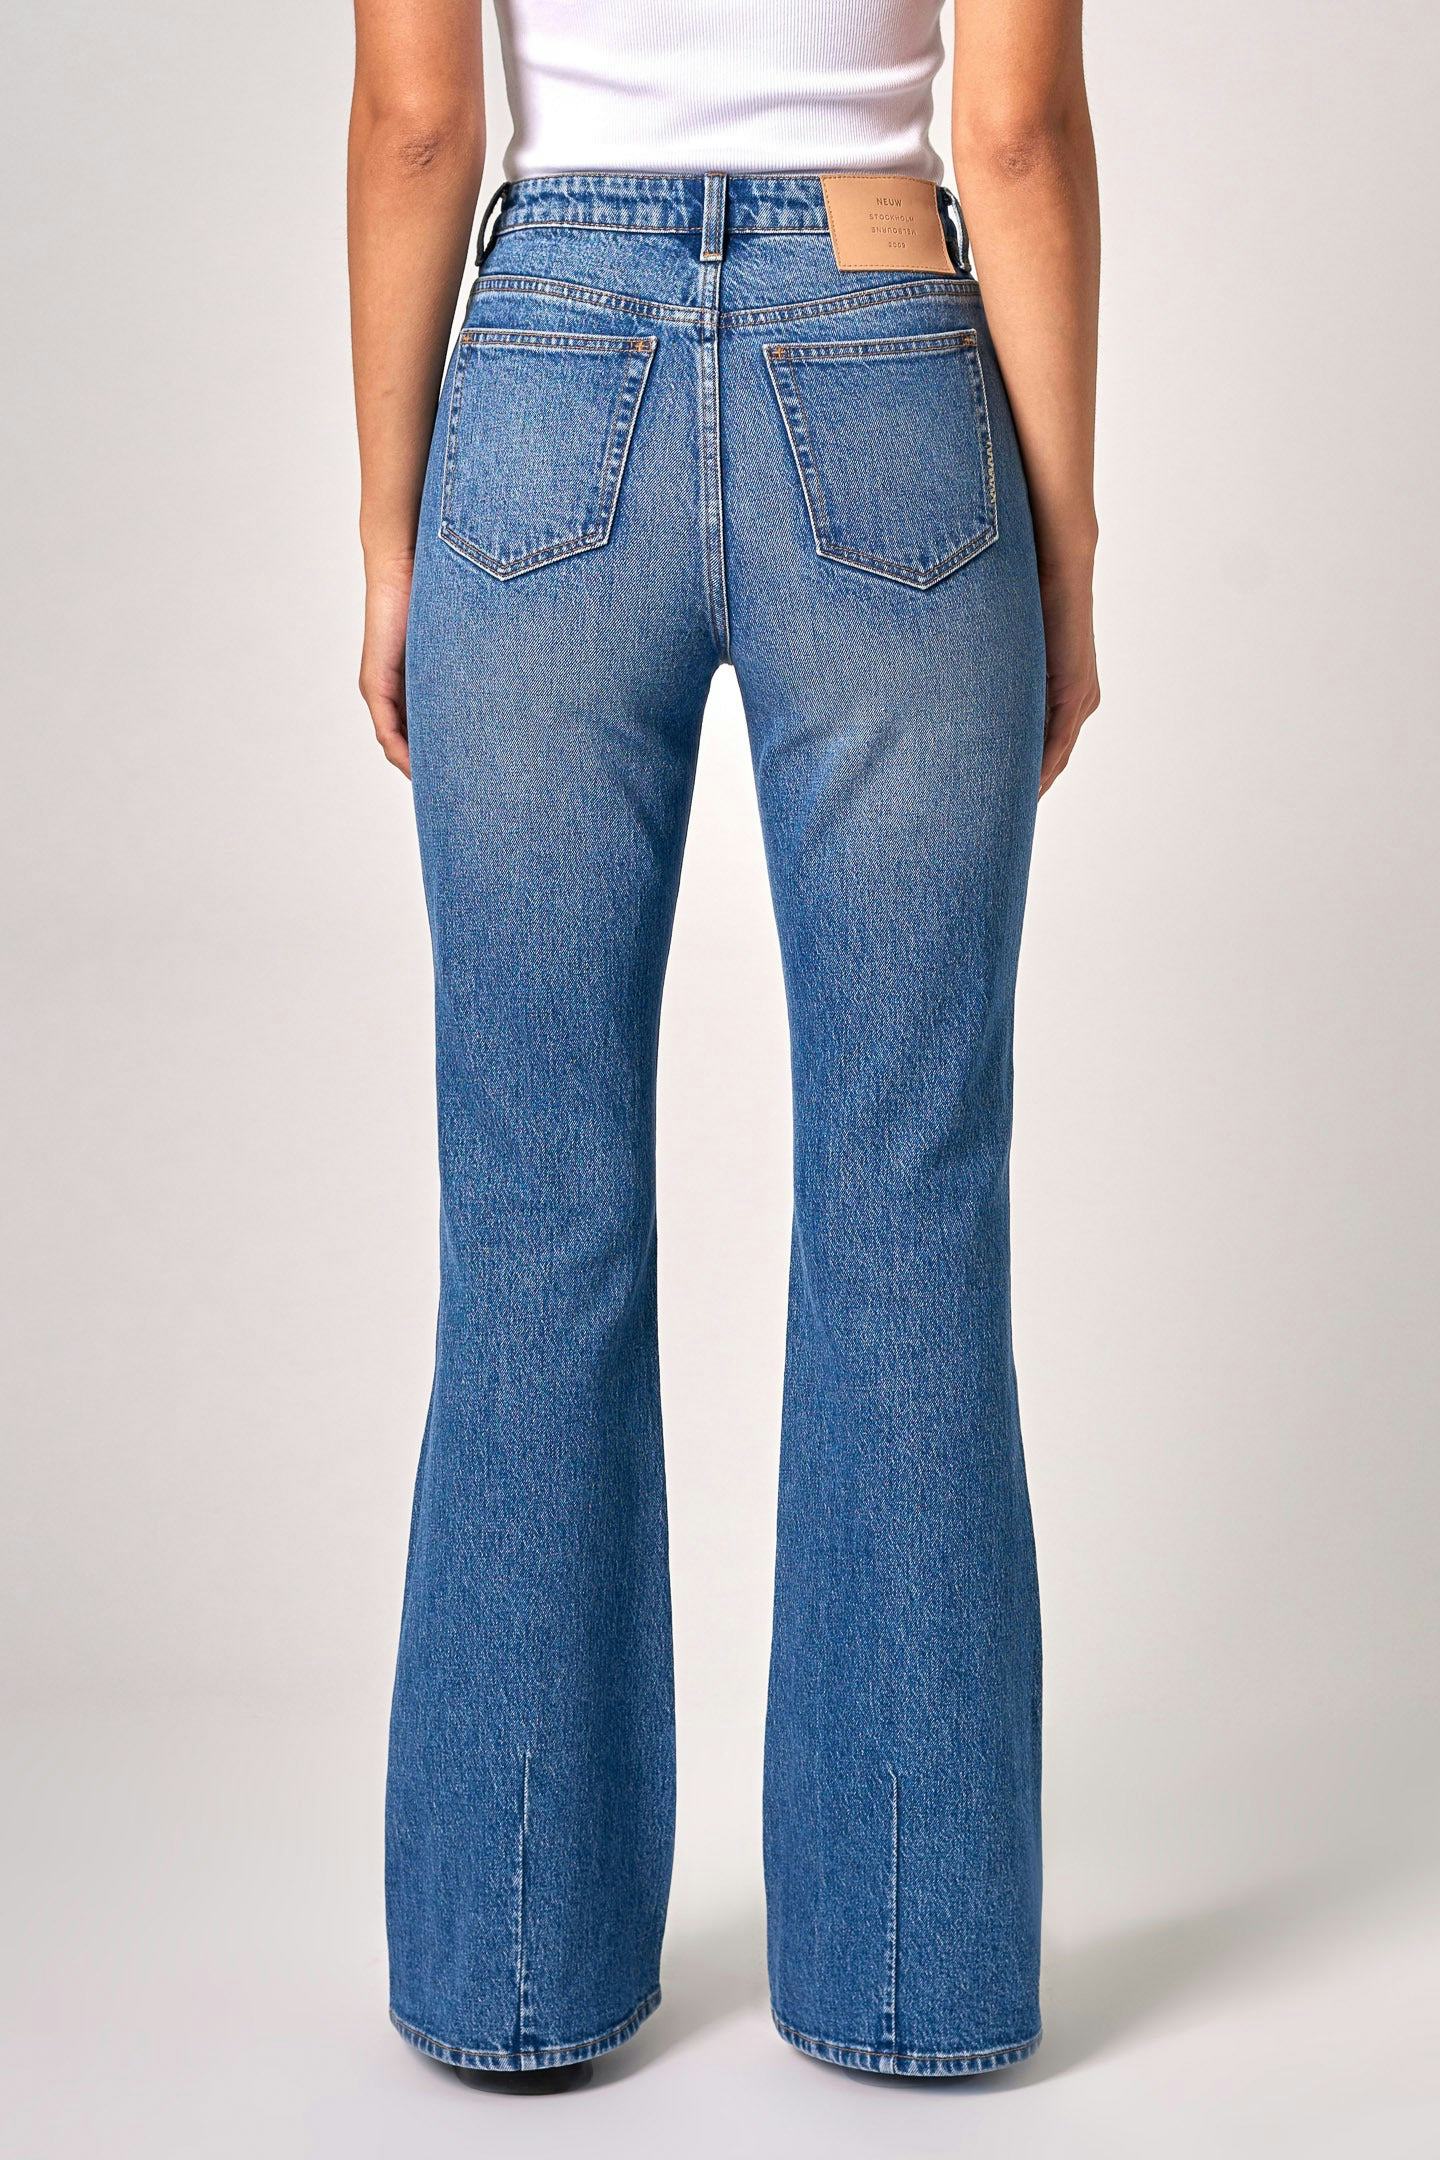 Debbie Bootcut - Unphased Neuw mid blue womens-jeans 